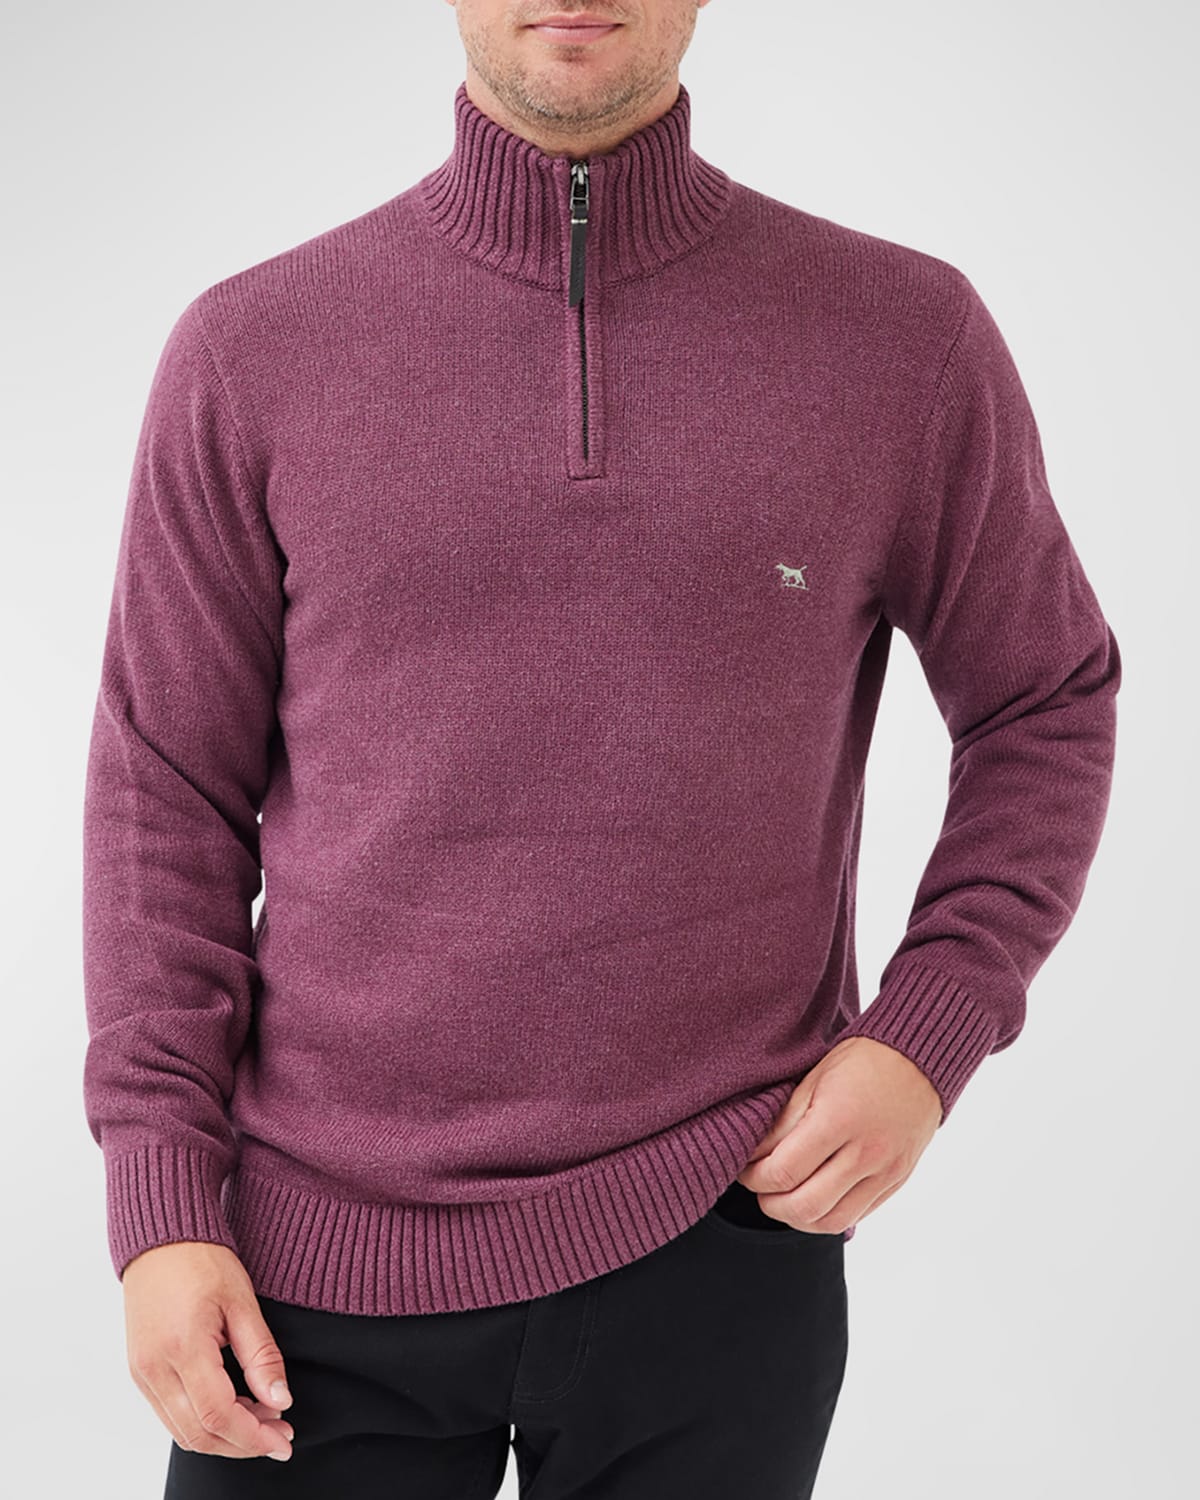 Men's Merrick Bay Half-Zip Cotton Sweater